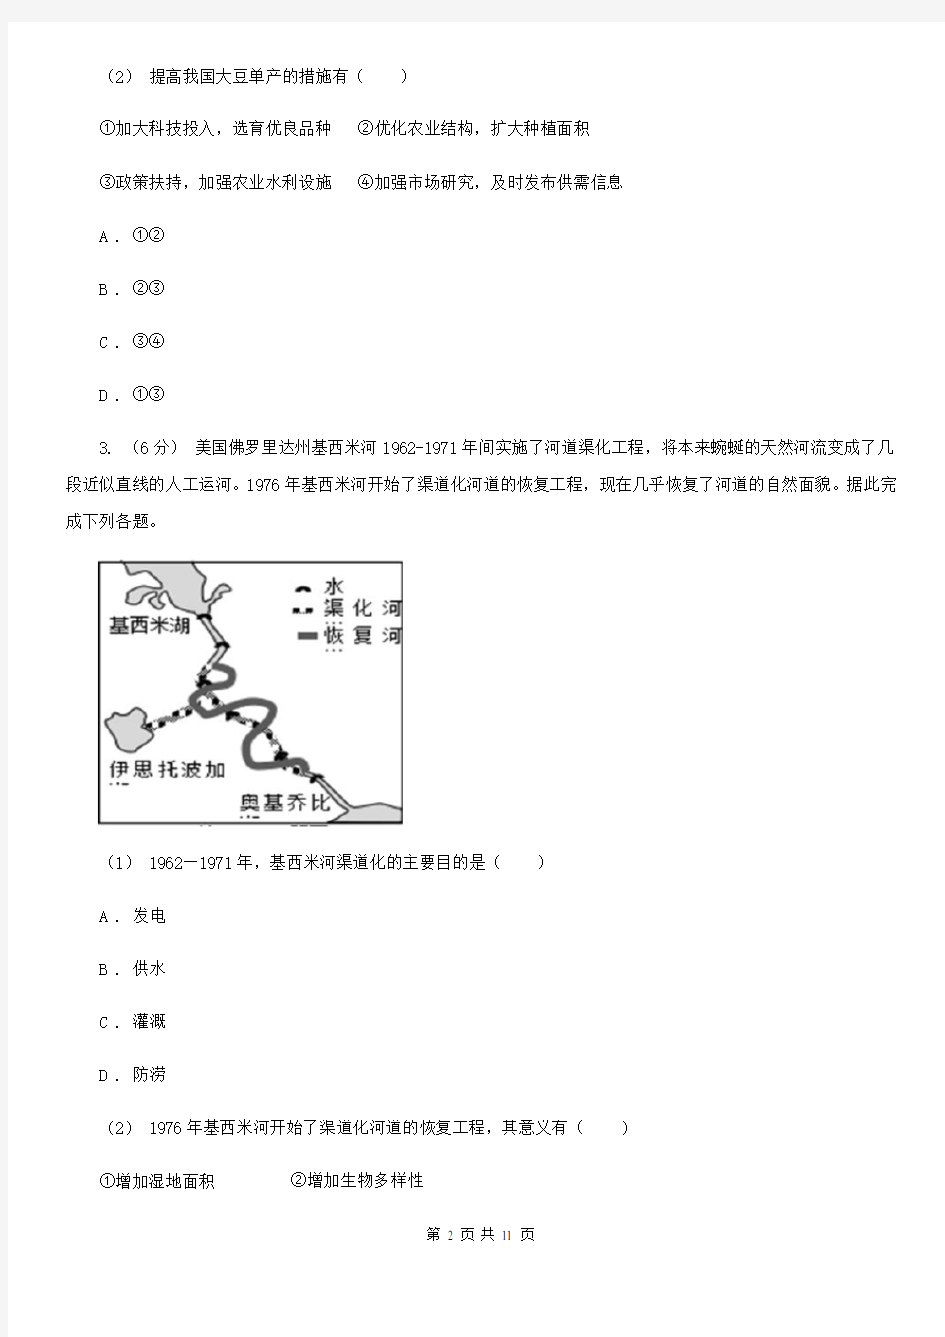 吉林省高三文综地理高考模拟试卷(5月)